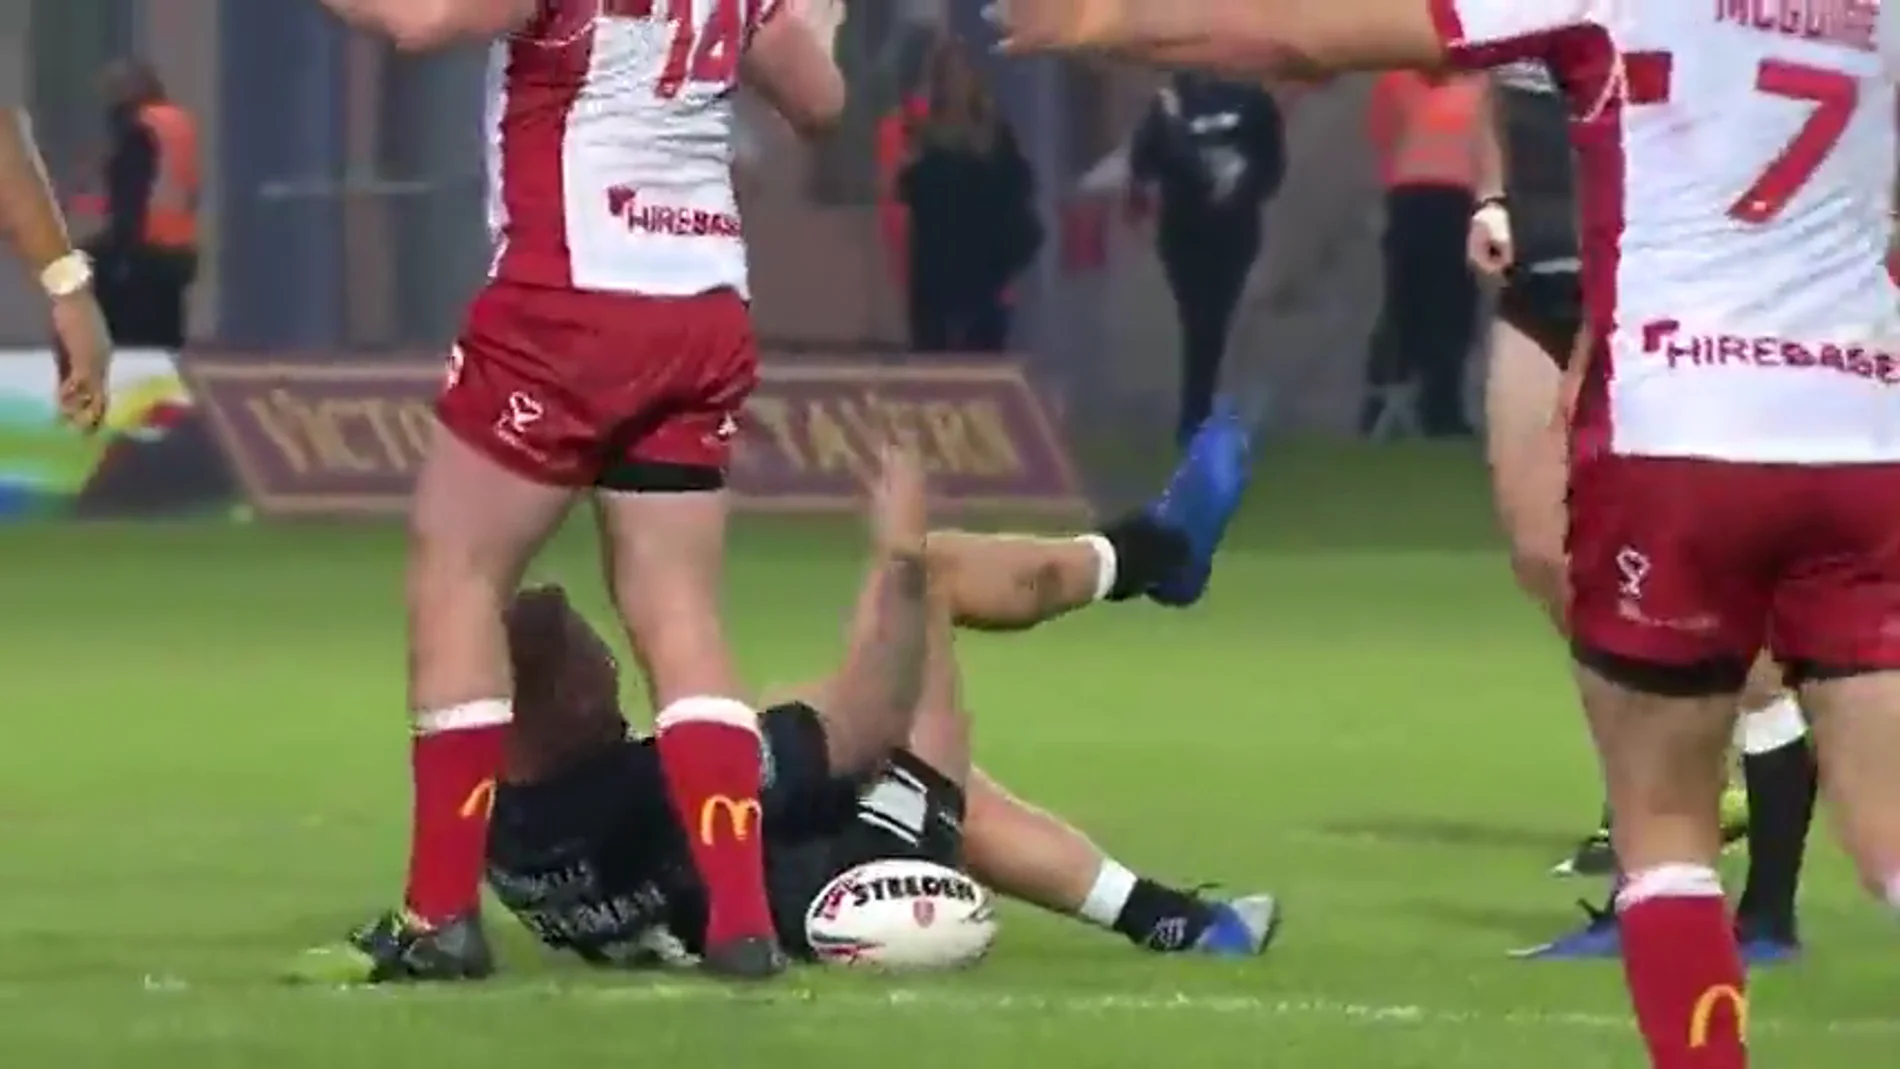 Un jugador de rugby se disloca la rodilla y se la recoloca... ¡a golpes!